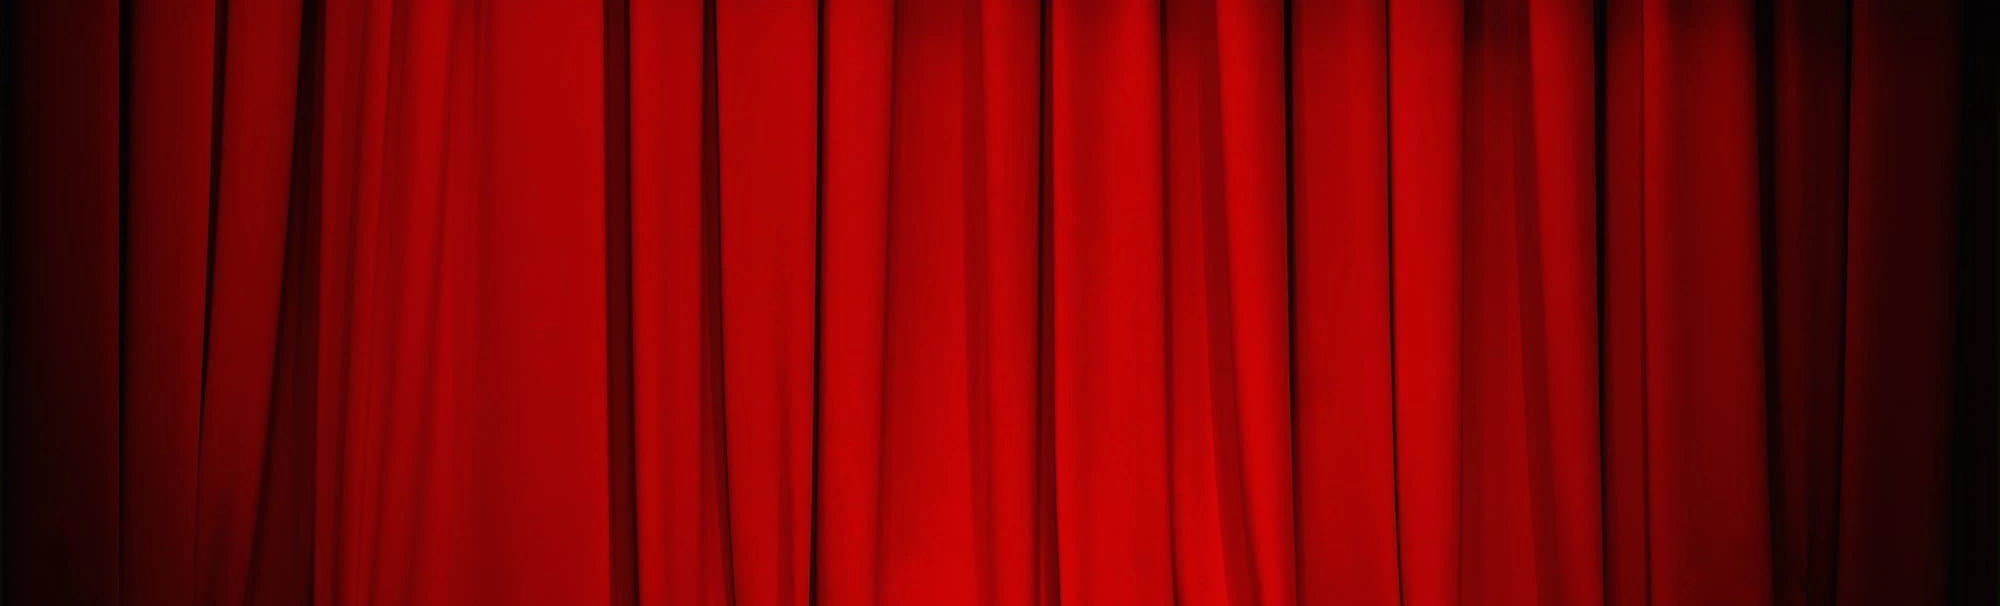 Завесы Театра Ермоловой скоро откроются для всех ценителей уникального искусства – на горизонте уже маячит ожидаемый спектакль «Гастроль Воланда».